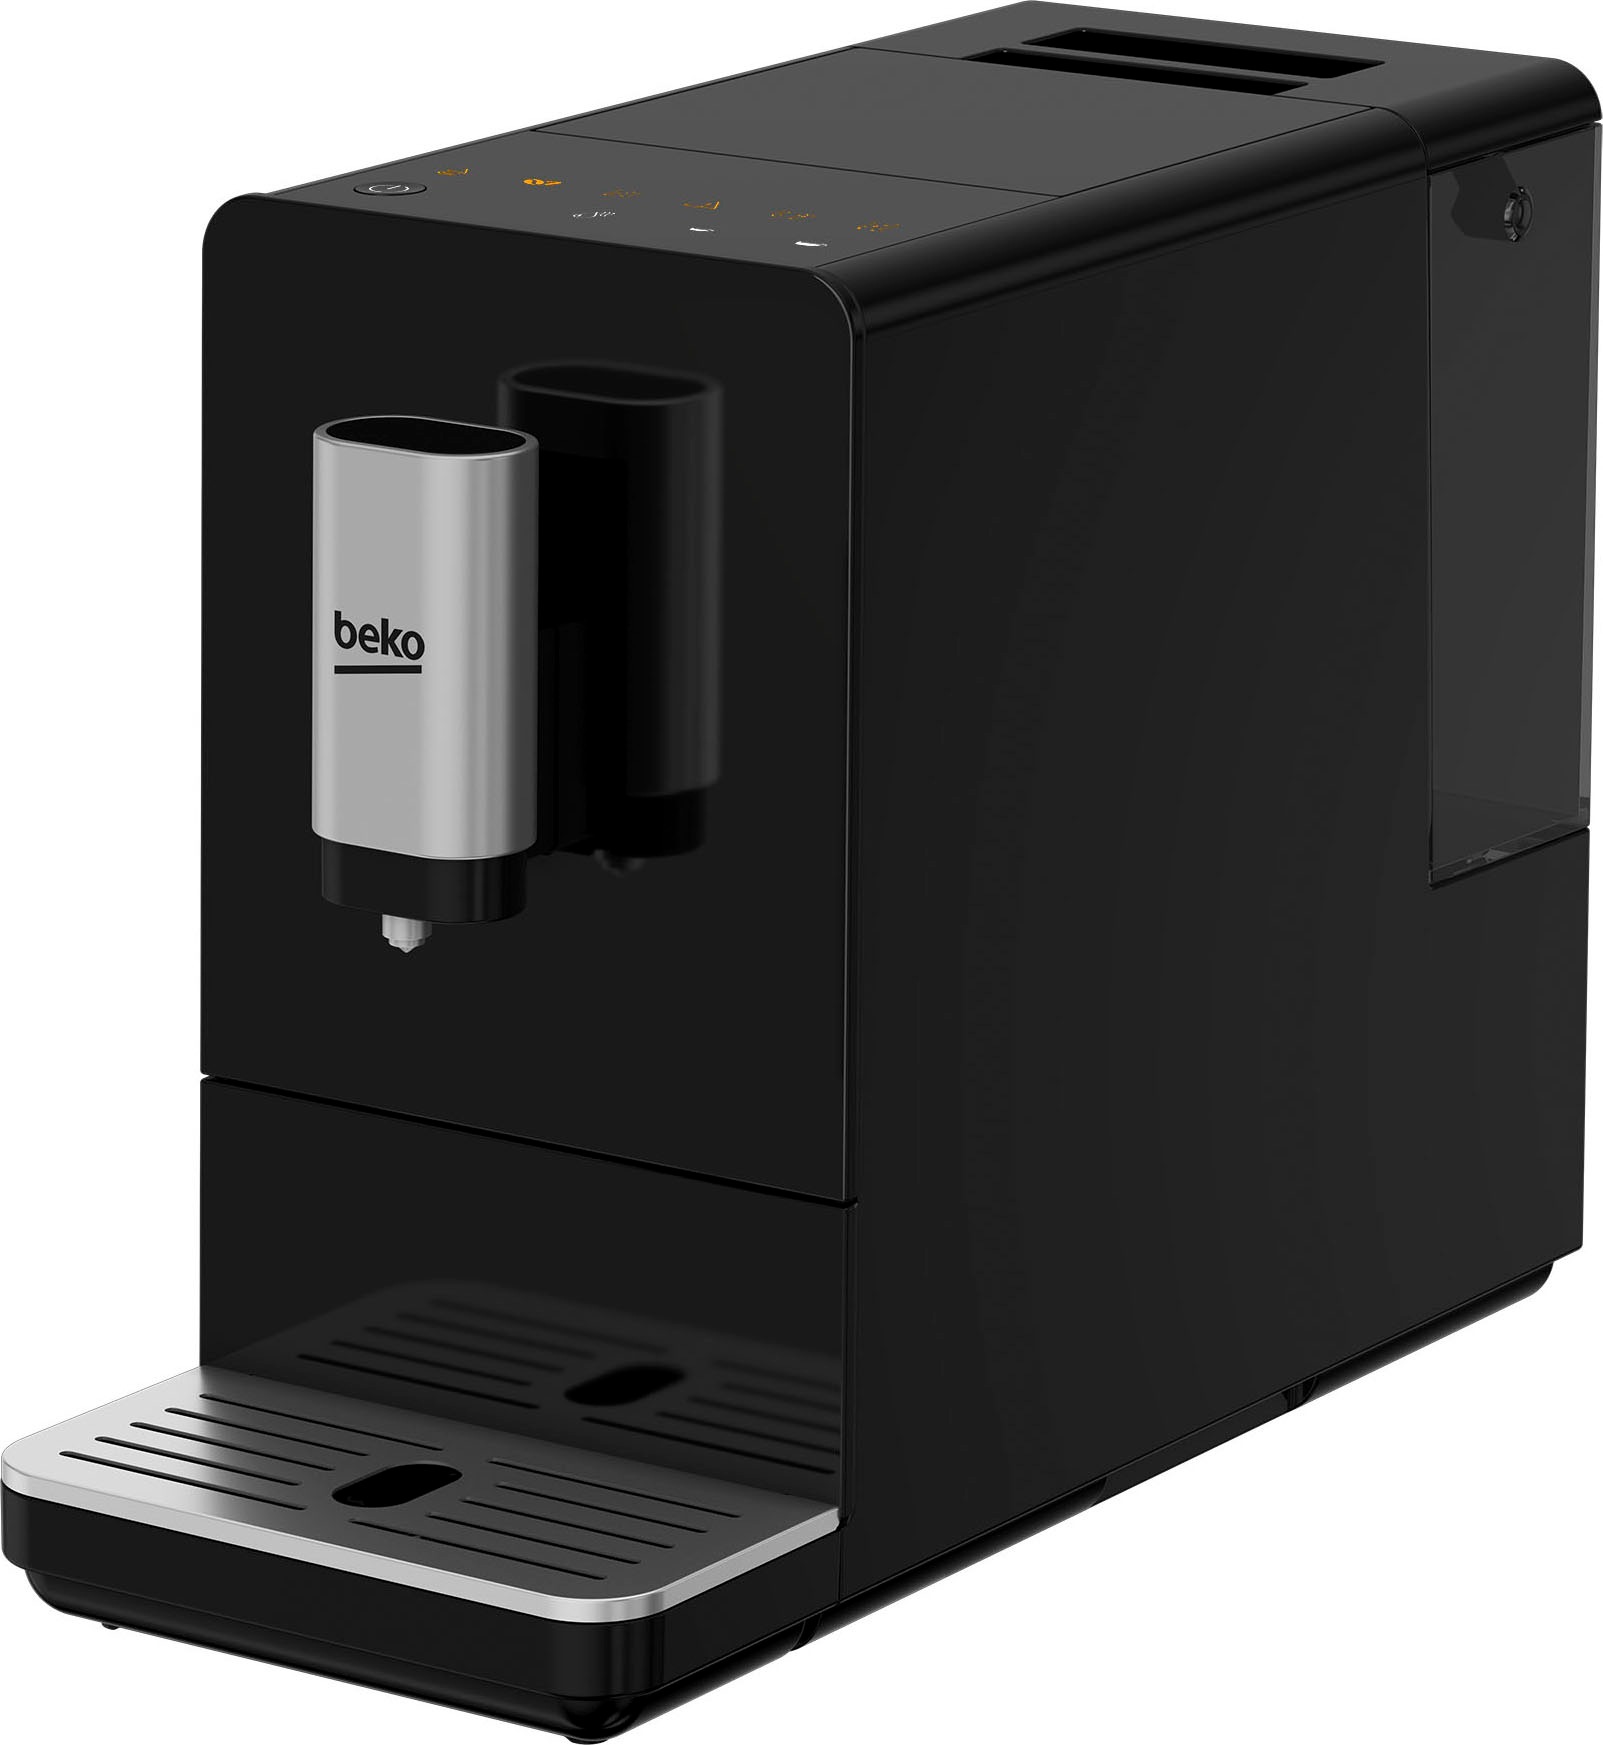 Beko Automatische CEG 3190 B Espressomaschine mit integrierter Kaffeemühle, Schwarz